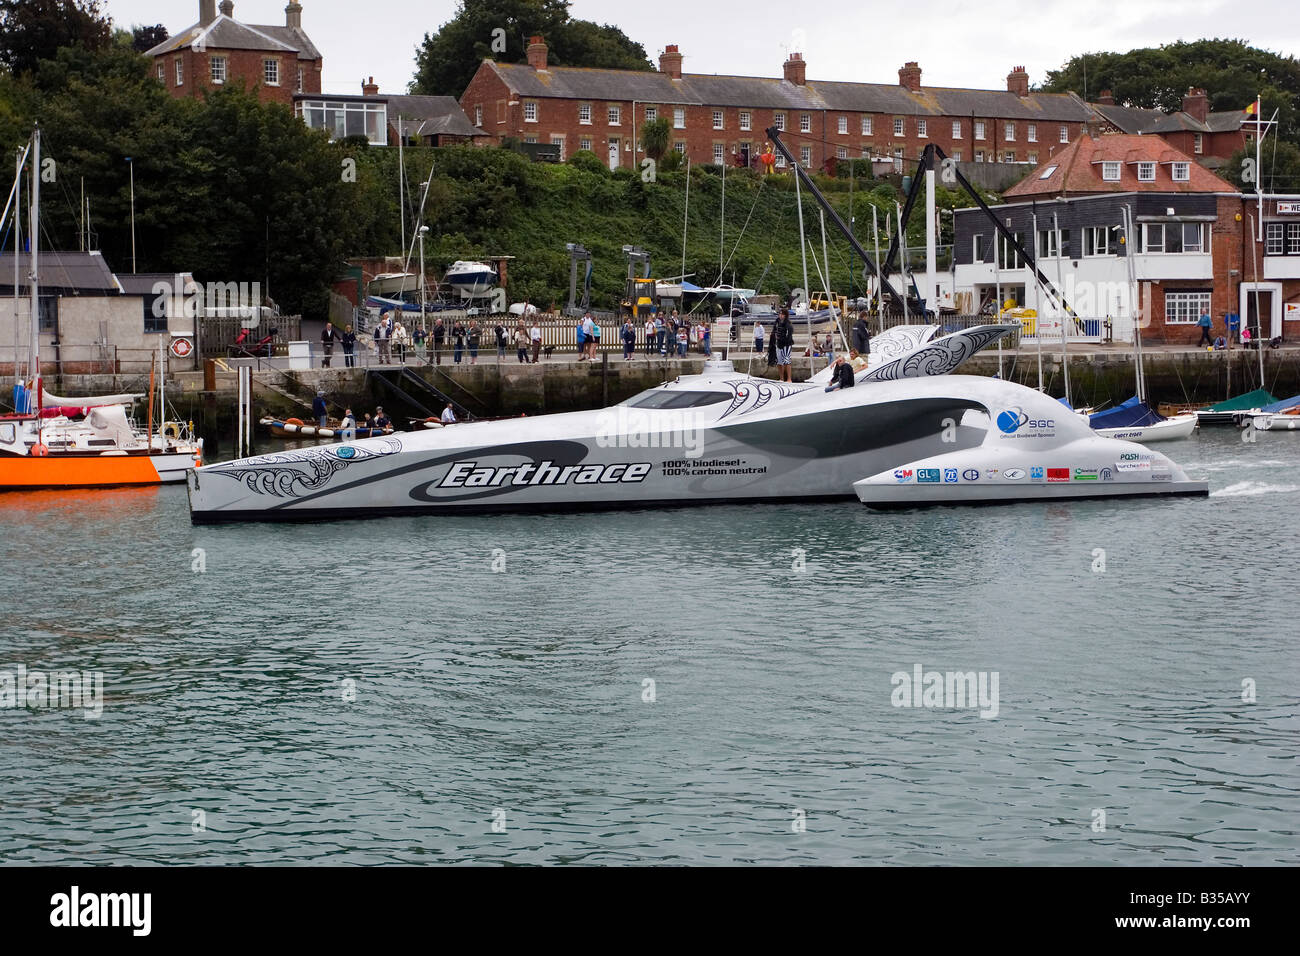 Vague futuriste trimaran Earthrace piercing dans le port de Weymouth, fonctionne sur le biodiesel et détient record mondial pour le tour du monde Banque D'Images